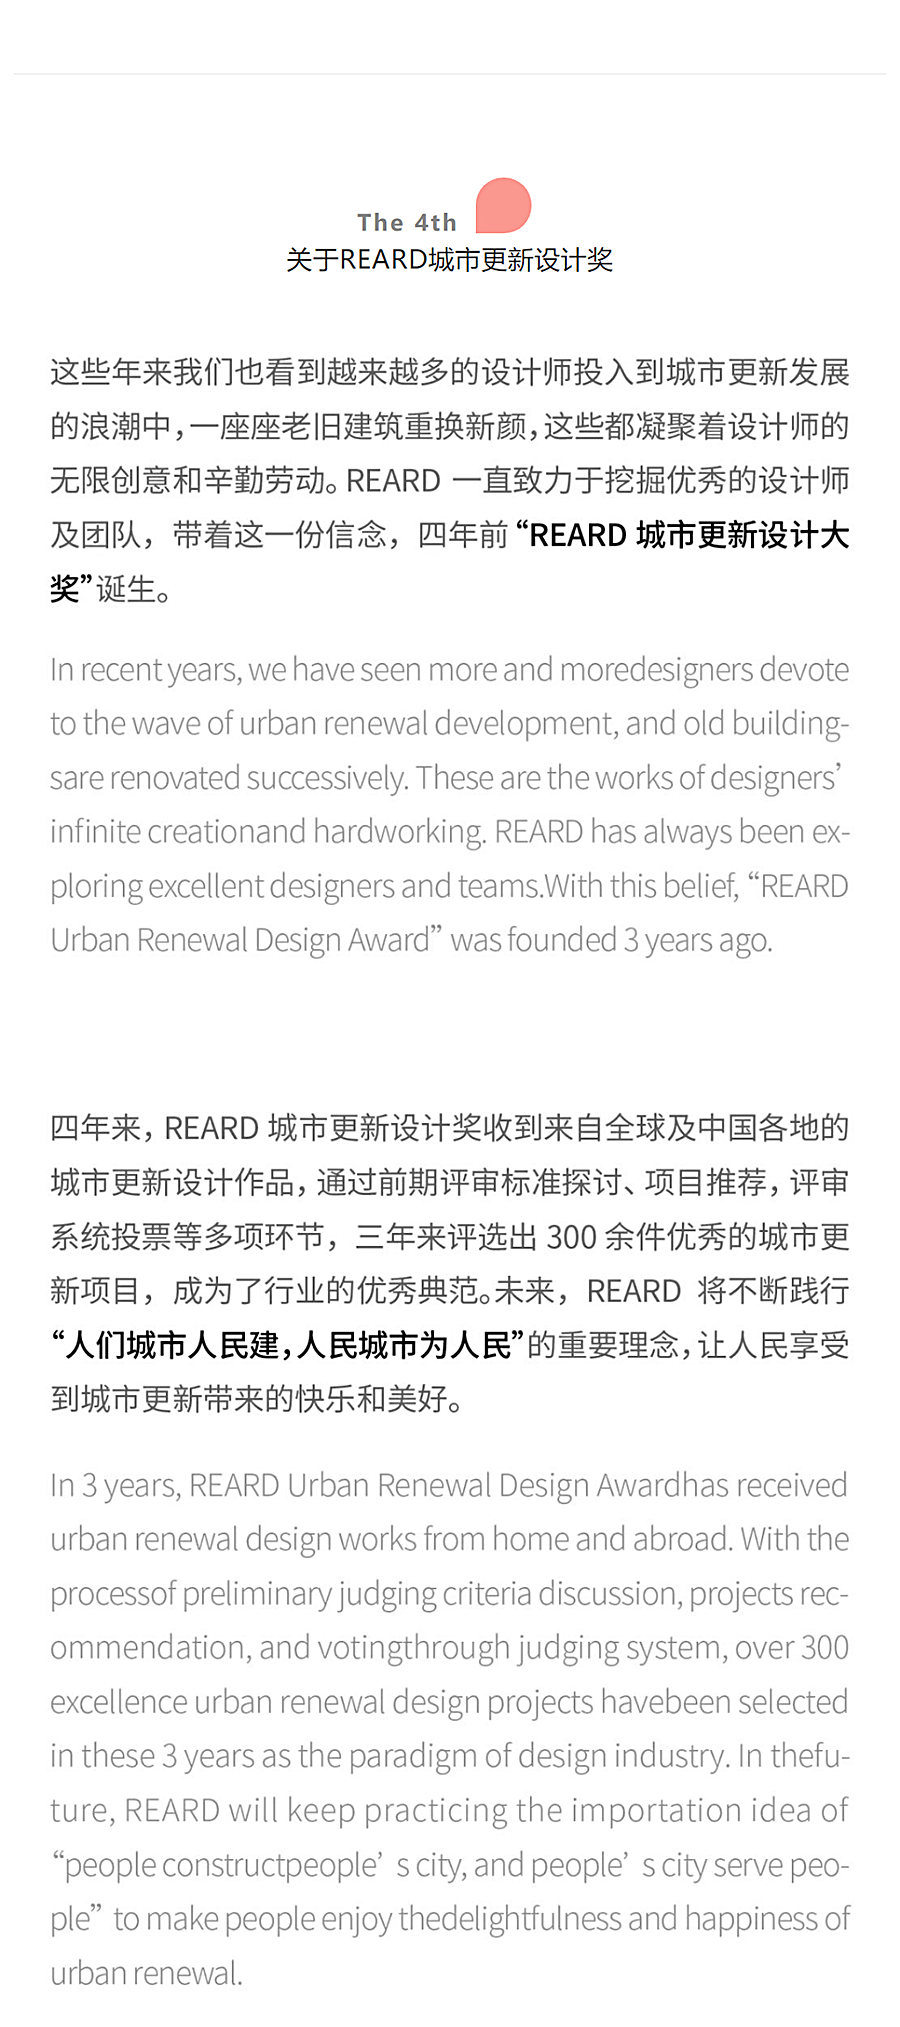 早鸟报名开启-_-第四届REARD城市更新设计奖新赛季_0002_图层-3.png